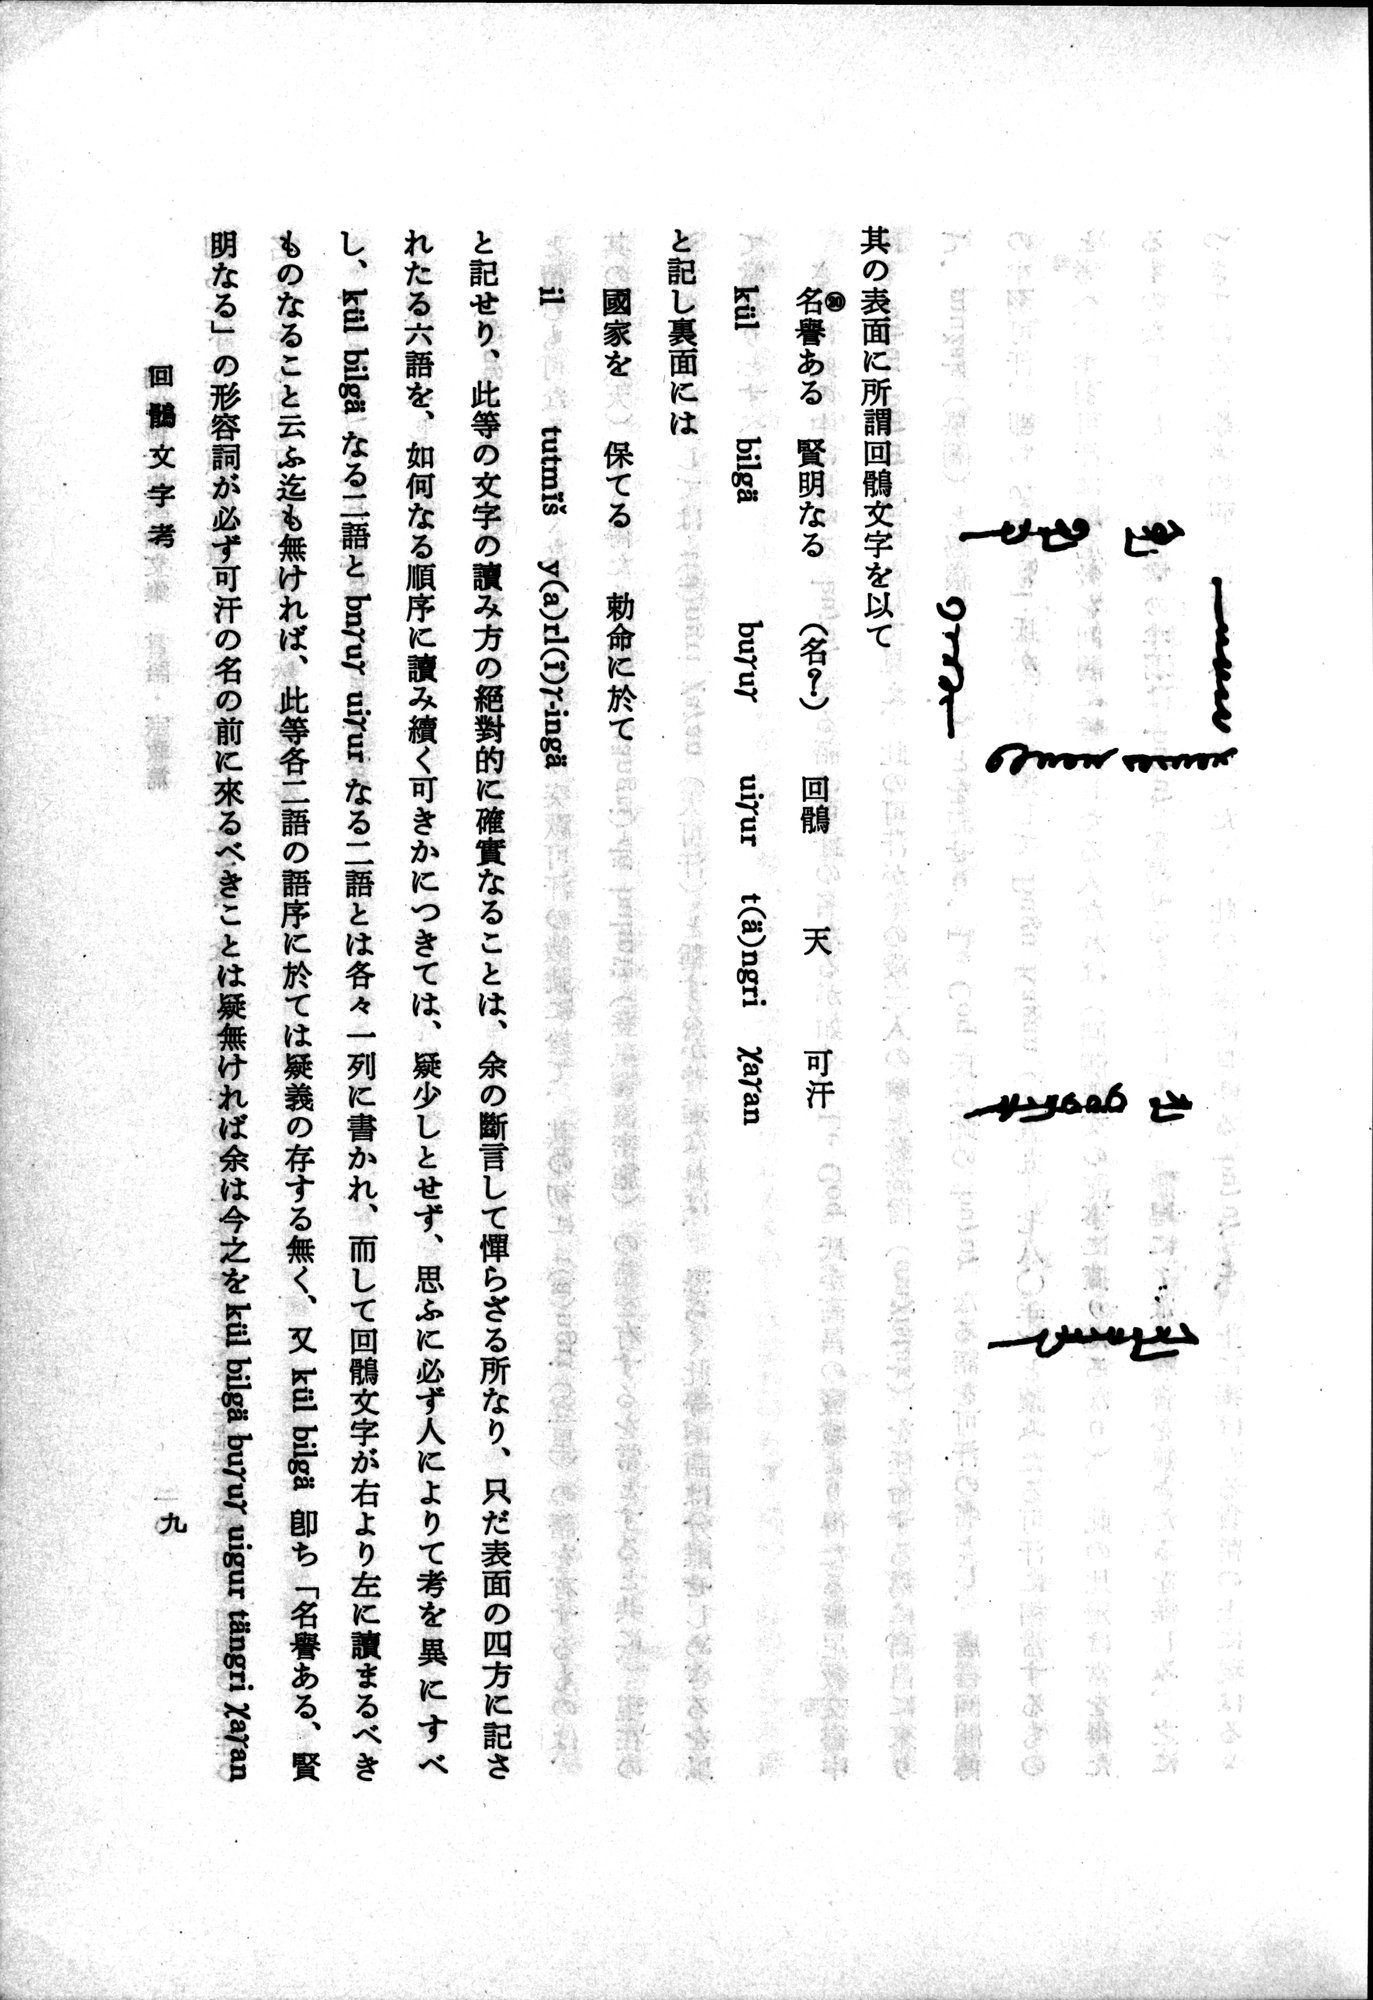 羽田博士史学論文集 : vol.2 / 59 ページ（白黒高解像度画像）